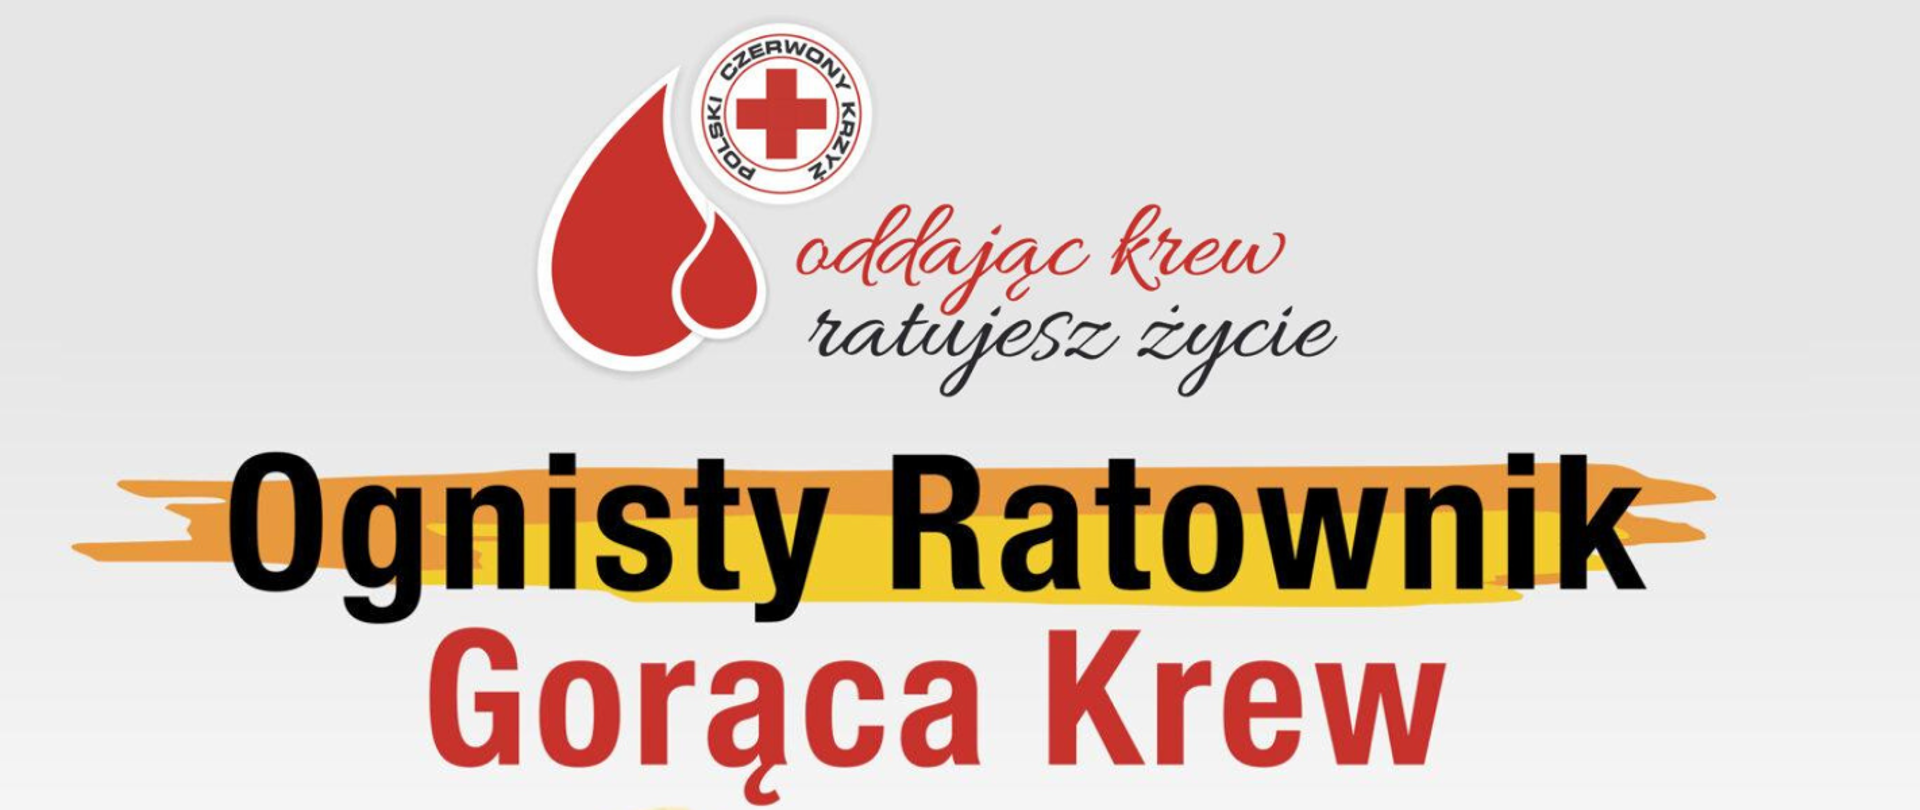 Na zdjęciu znajduje się logo Poleskiego Czerwonego Krzyża, rysunek z kroplą krwi oraz napisy oddając krew ratujesz życie oraz ognisty ratownik gorąca krew